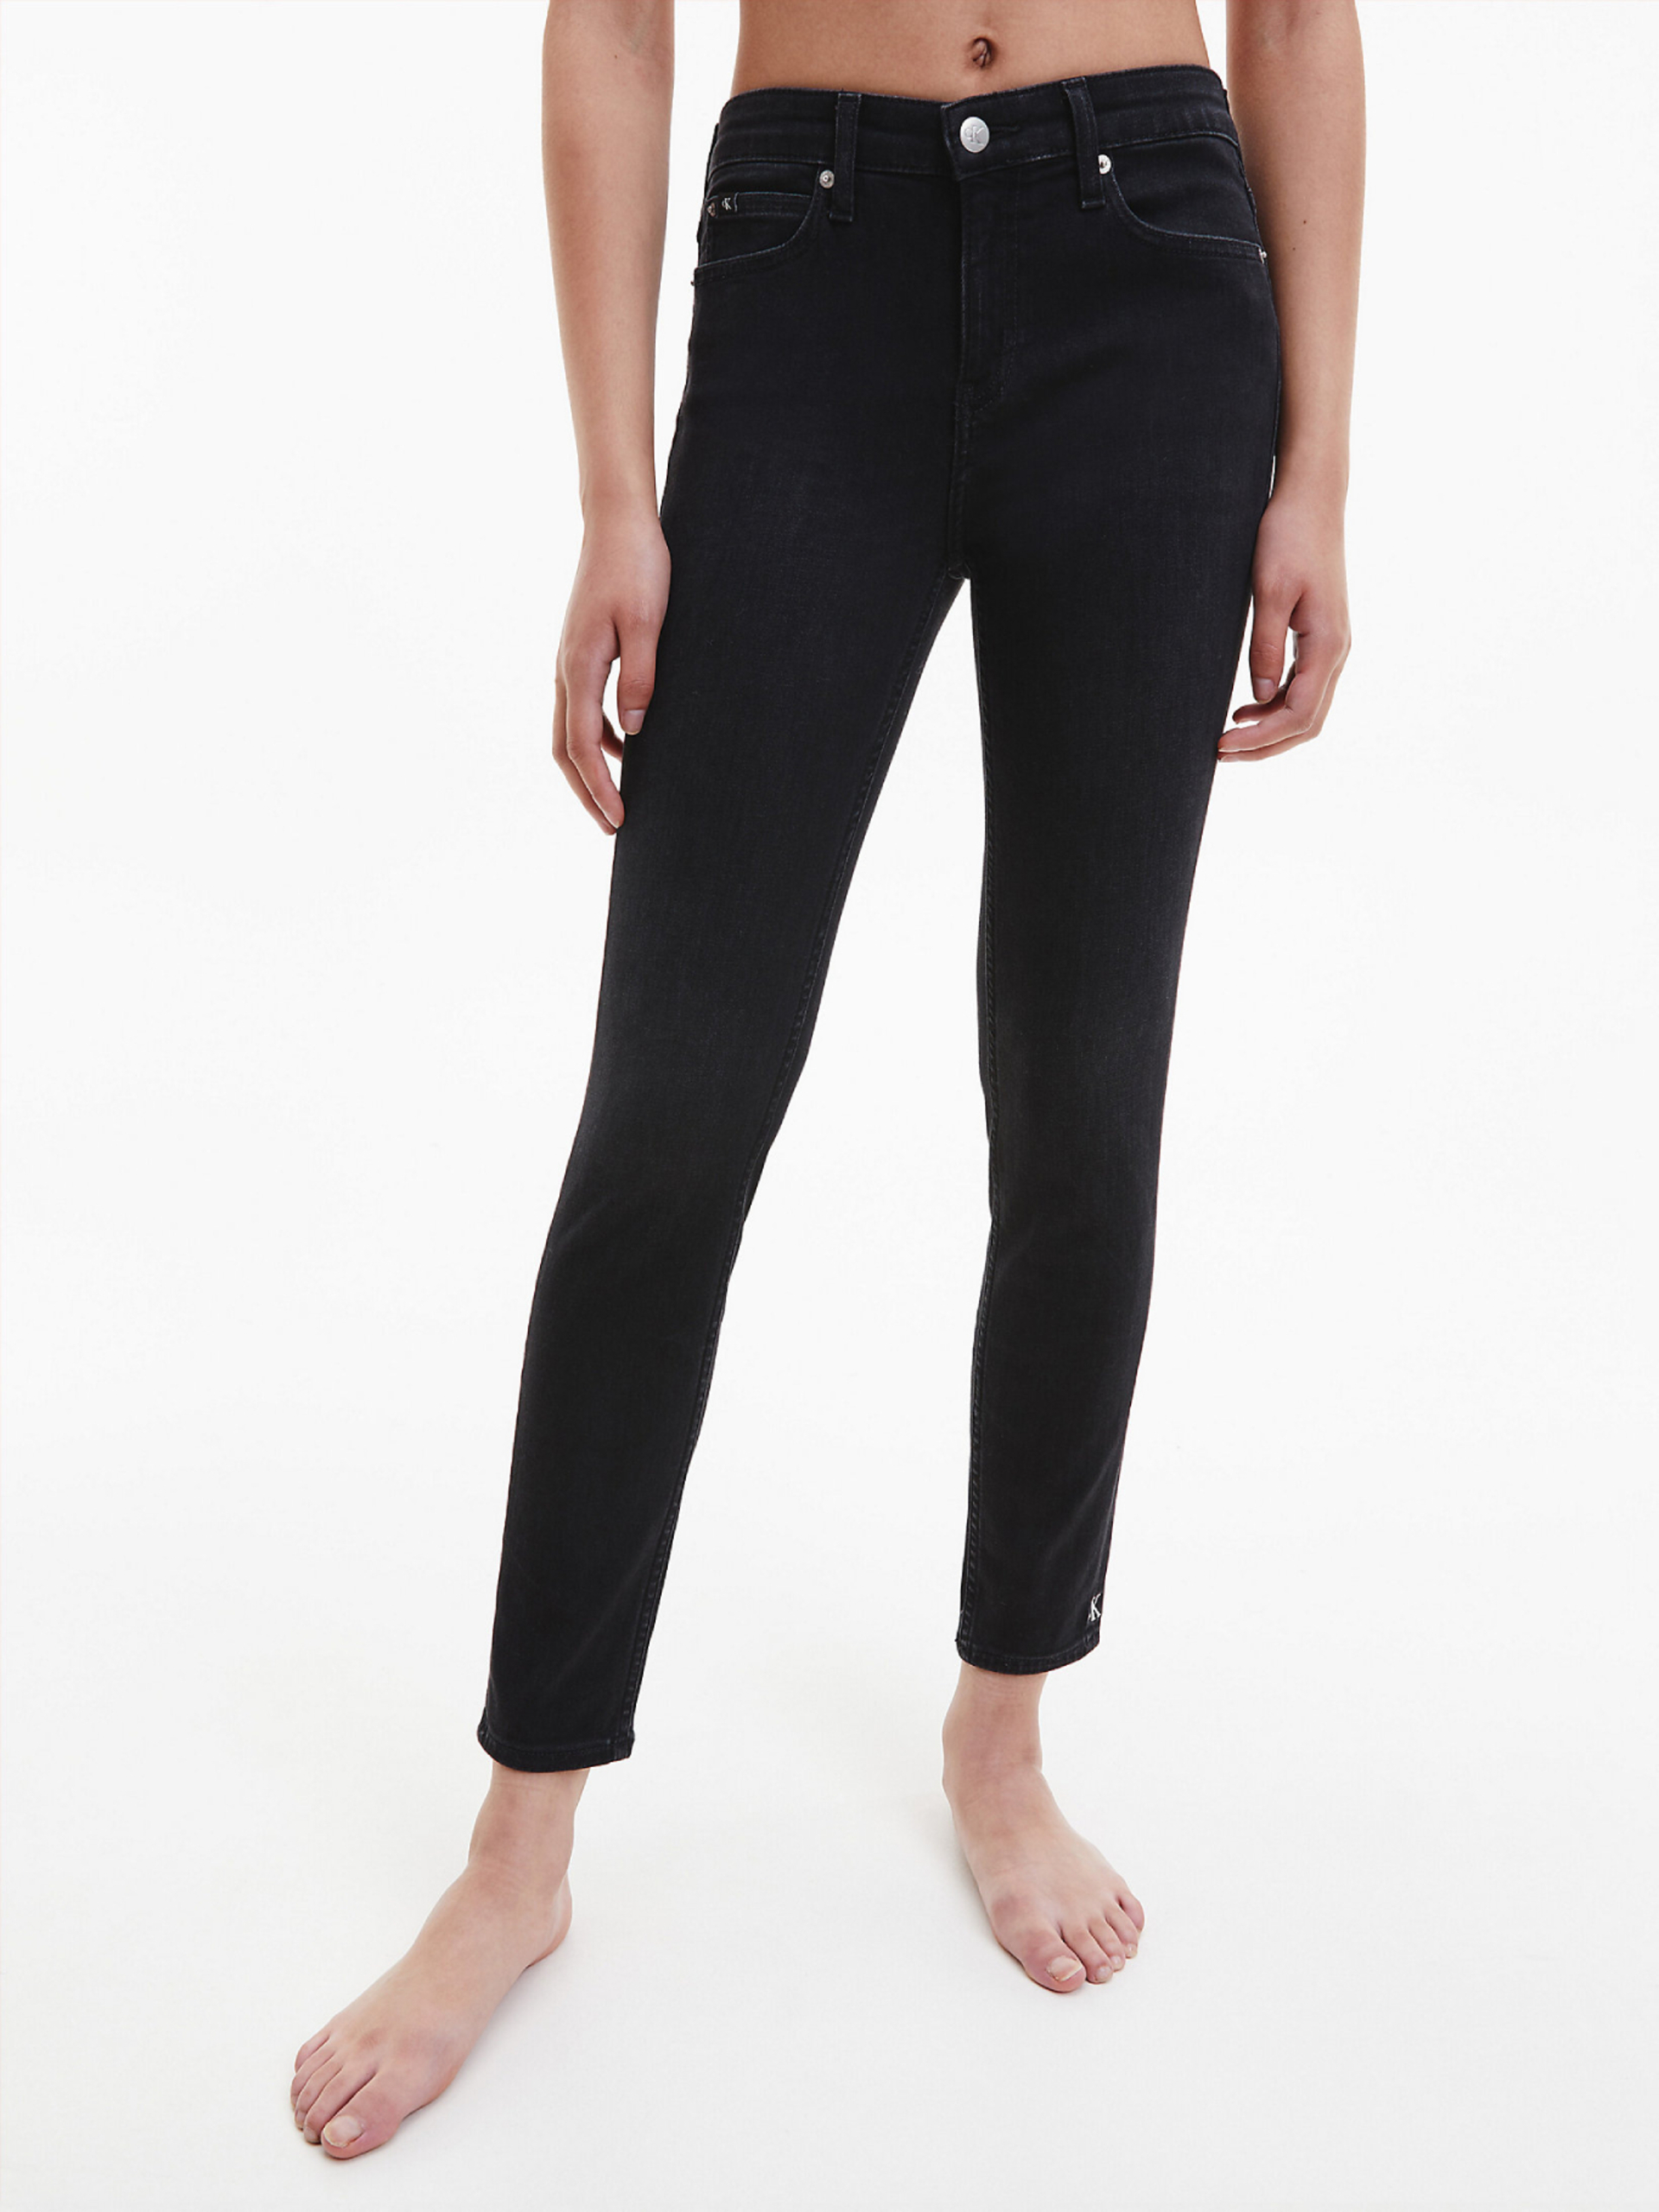 Calvin Klein dámské černé džíny - 25/30 (1BY)